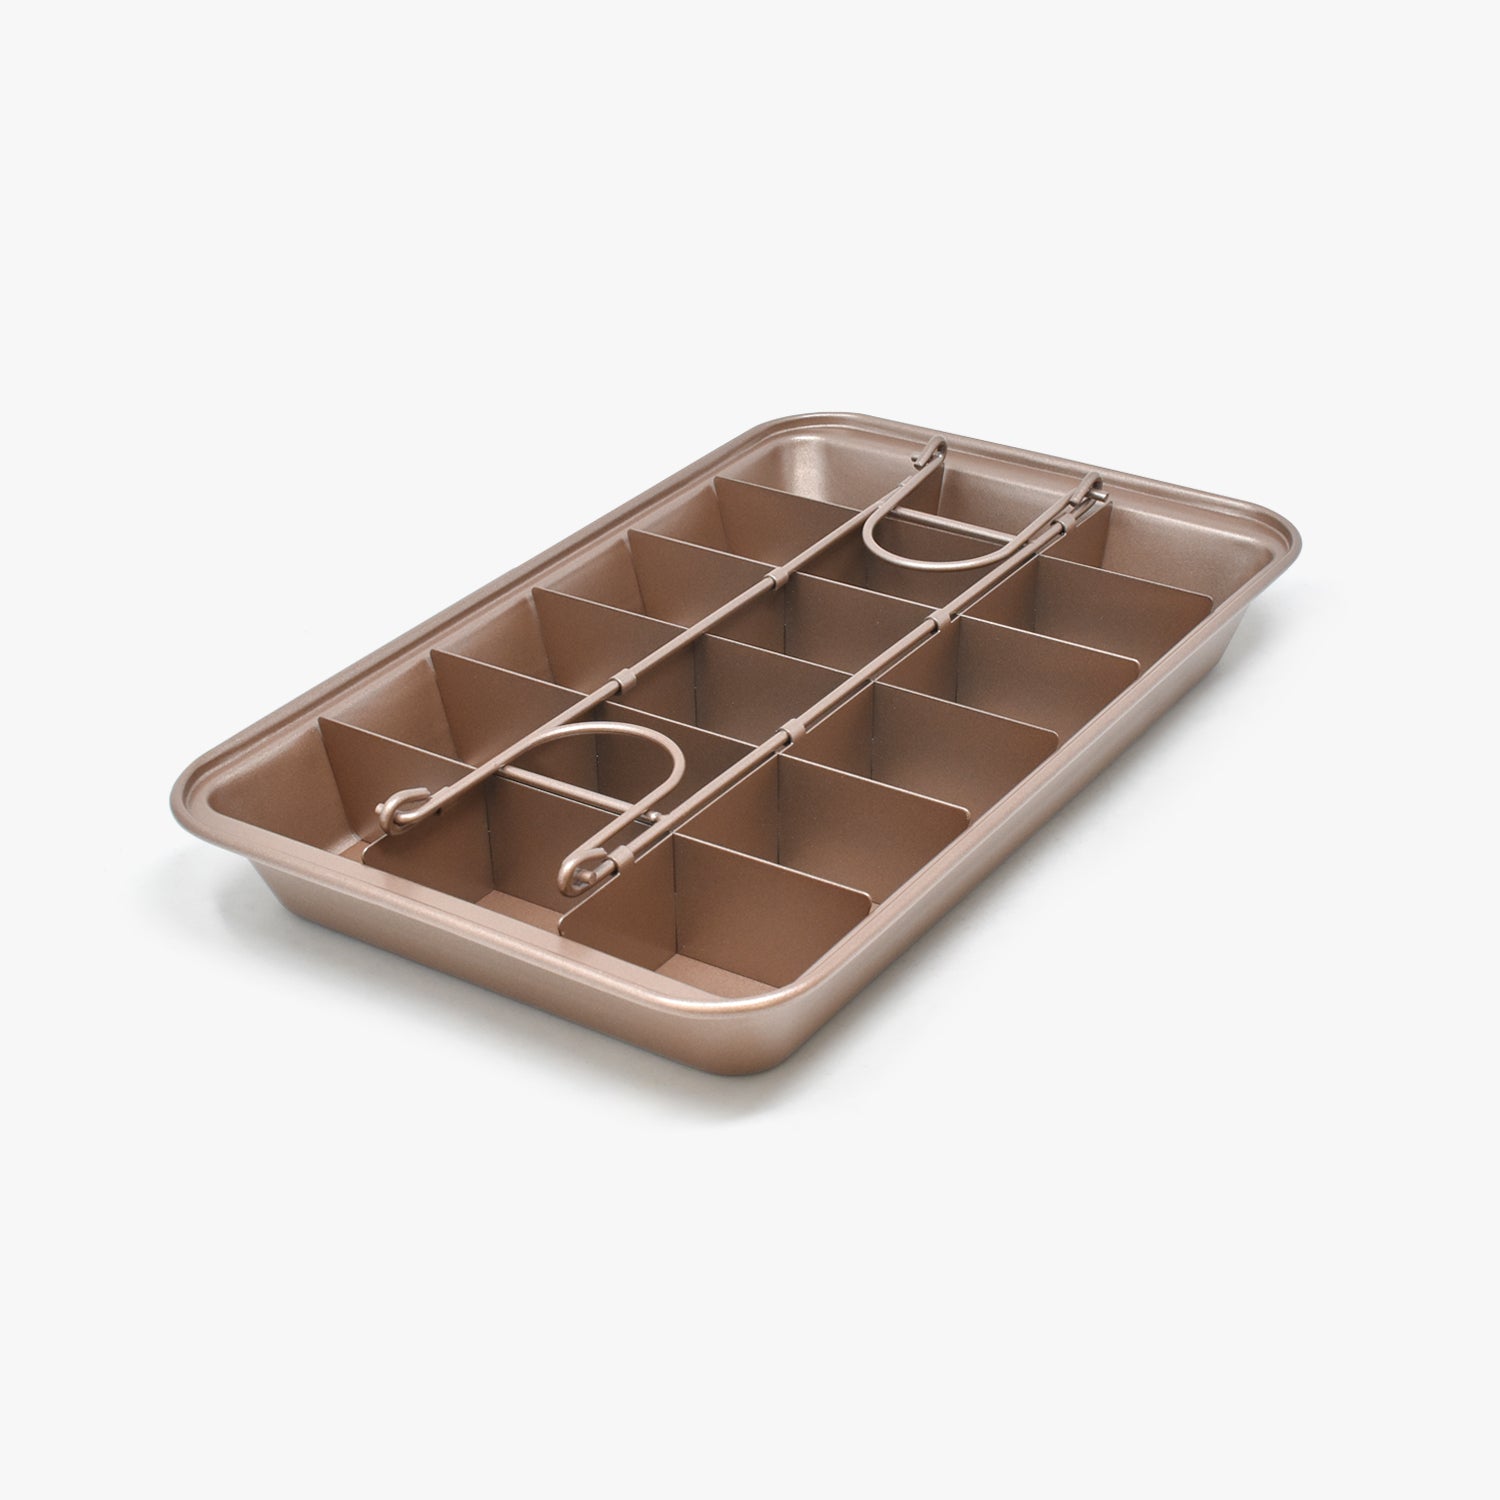 PatPro distribution - Moule à brownie 18 parts disponible chez #PatPro Moule  en acier à revêtement anti-adhérent spécialement adapté à la cuisson du  brownie. Inclus grille permettant de cuire le brownie en